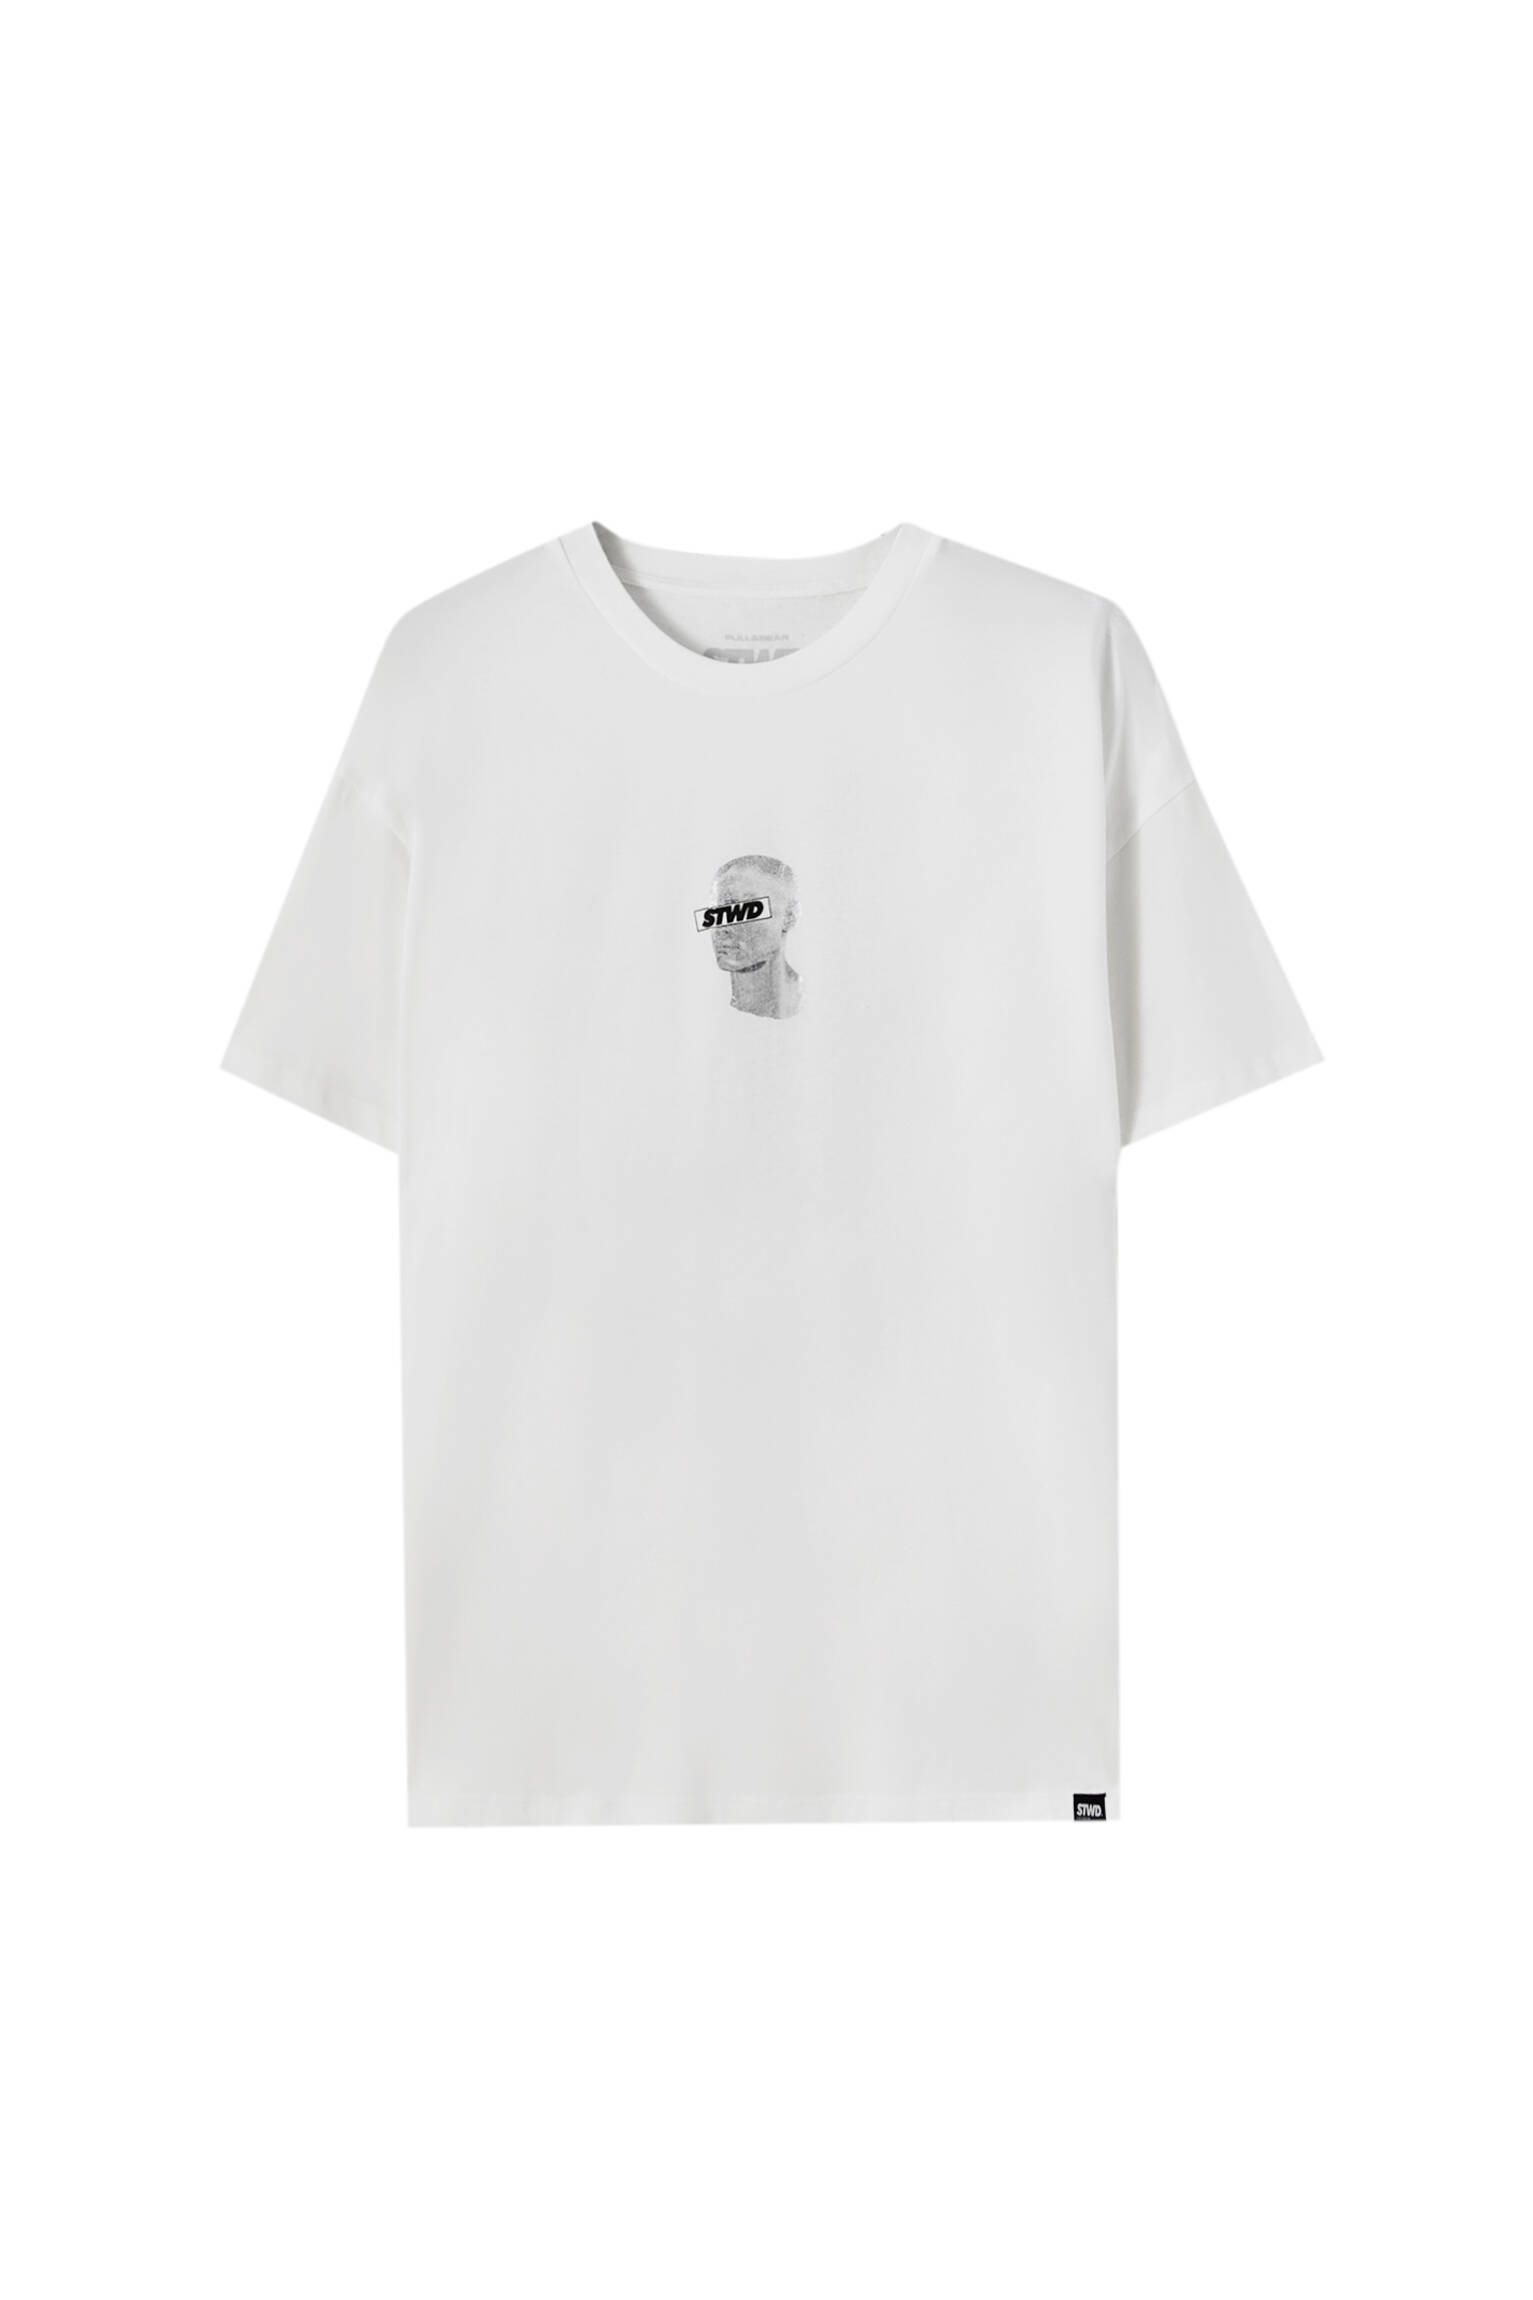 Pull&bear Homme T-shirt Blanc En Coton à Manches Courtes Et Col Rond Avec Illustration De Silhouette Et Logo Stwd Contrastants. Blanc CassÉ S